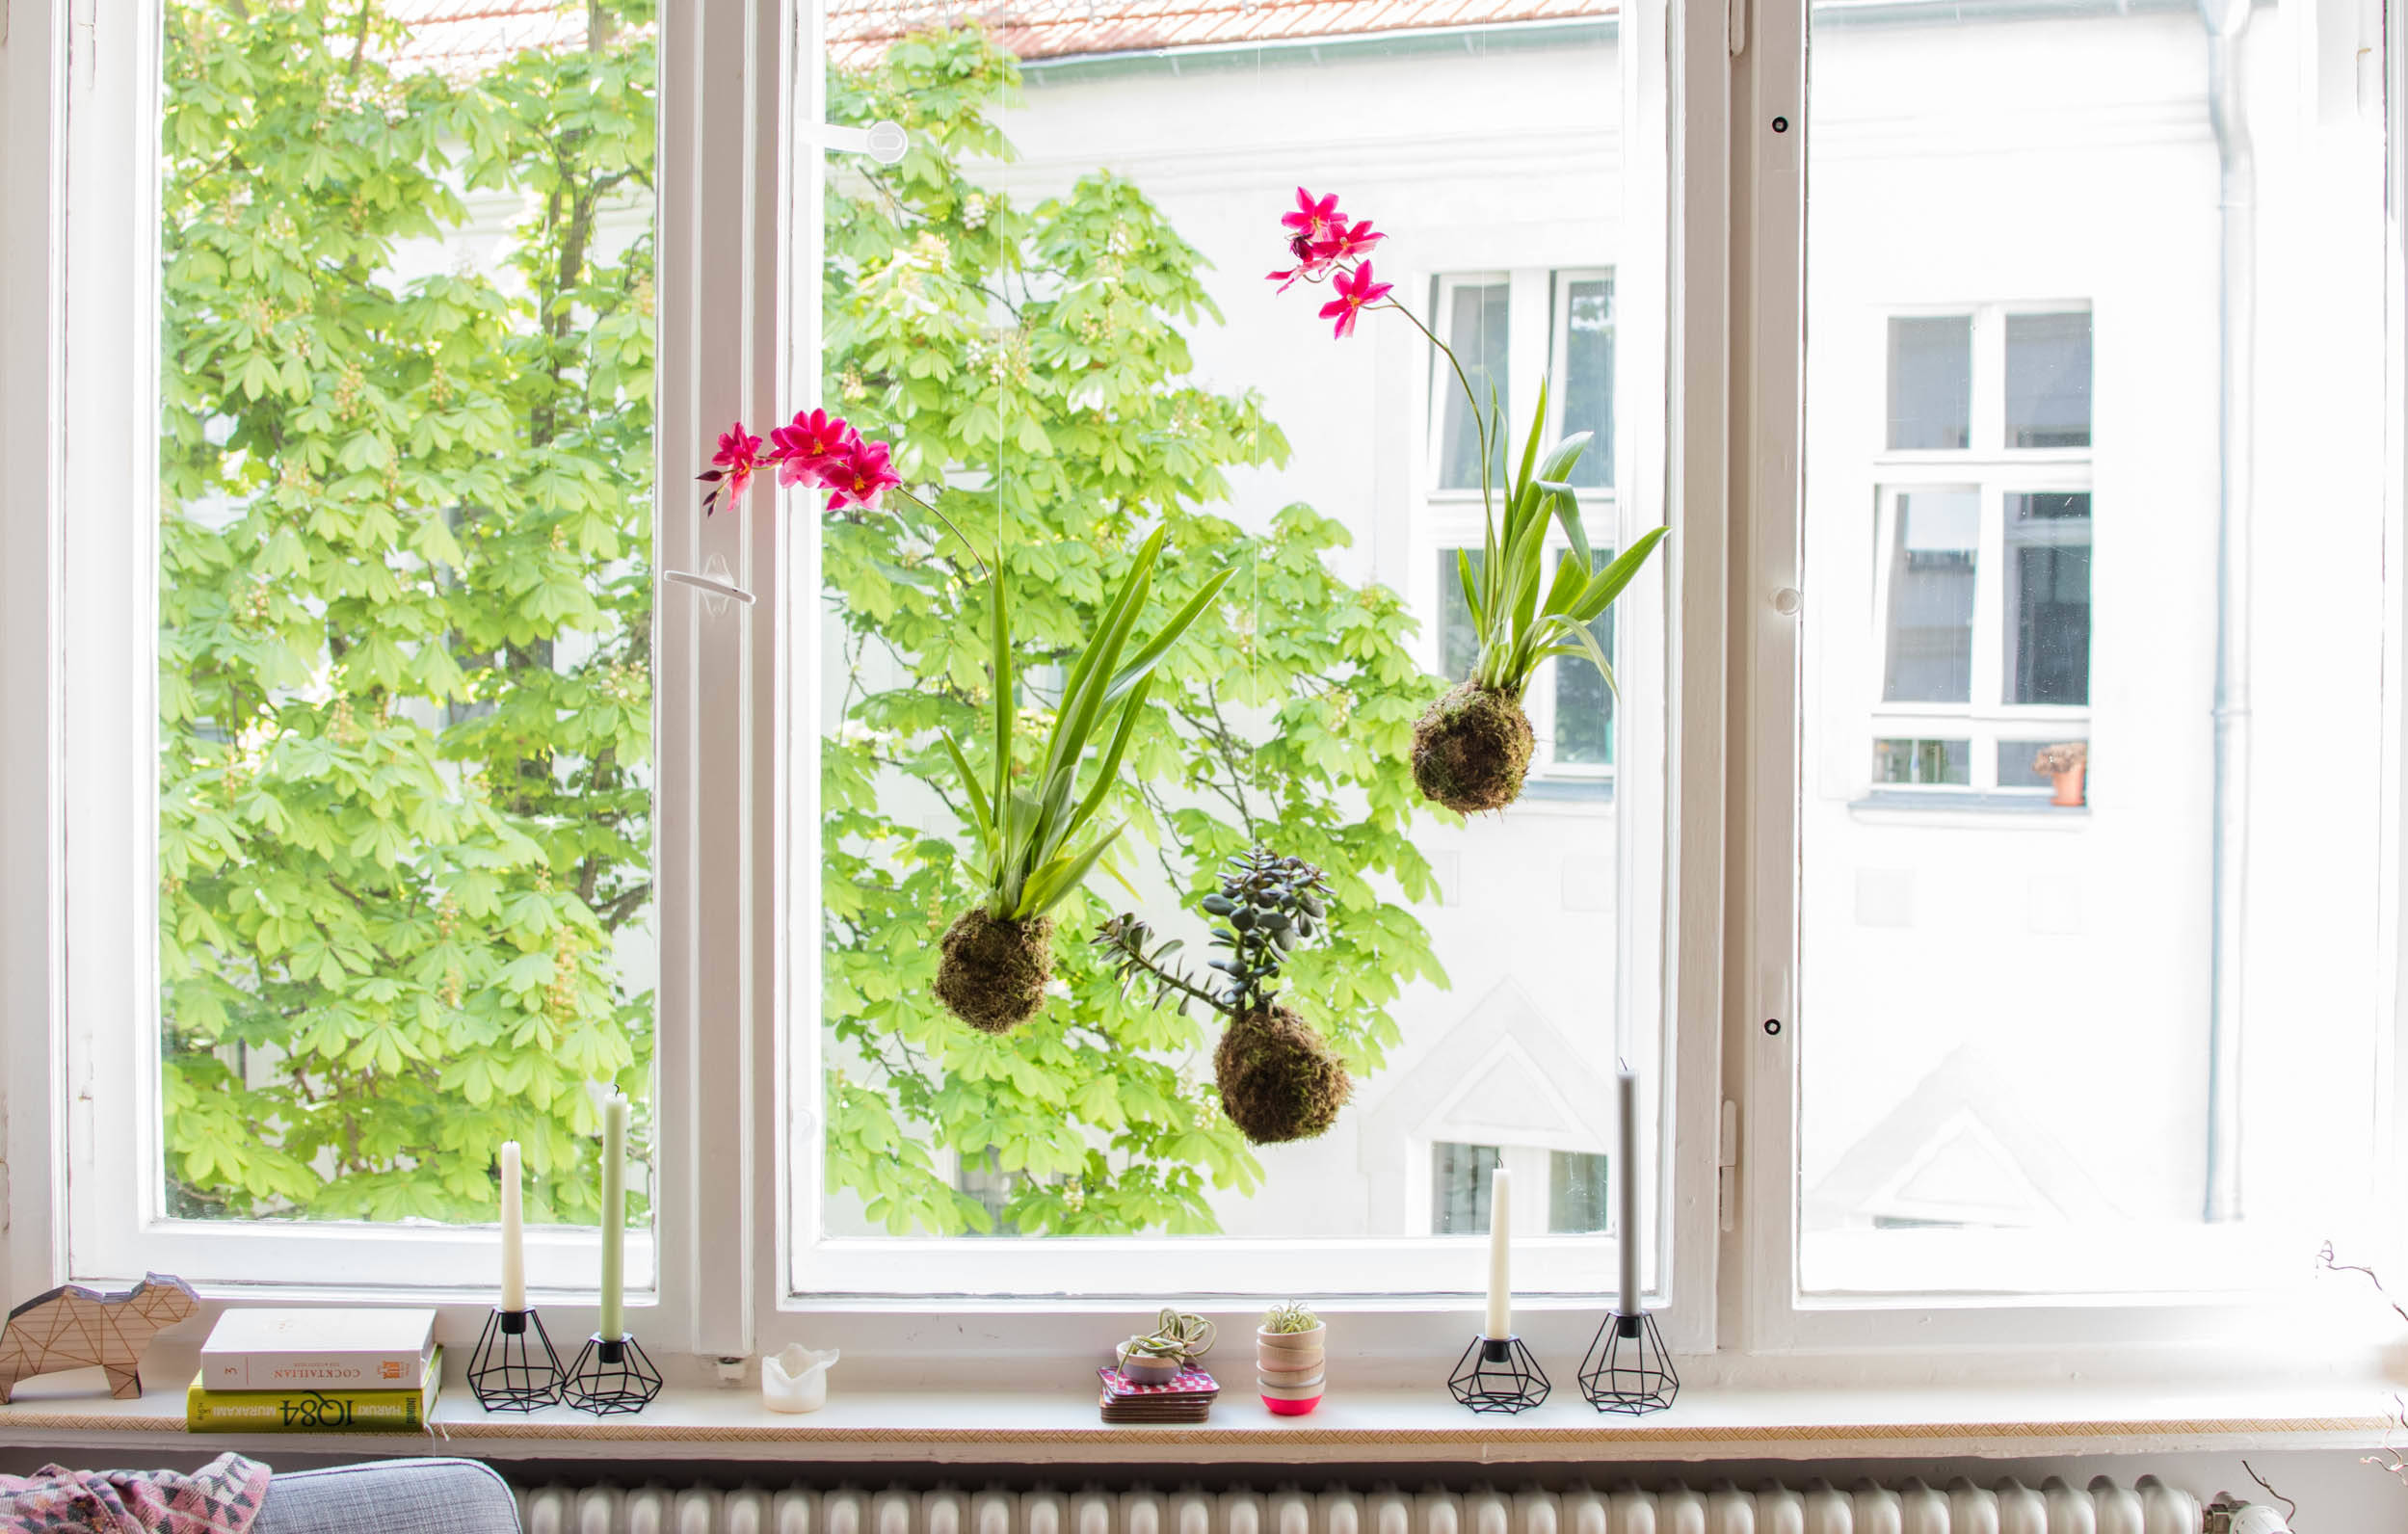 Без штор: 10 оригинальных идей для декора окна